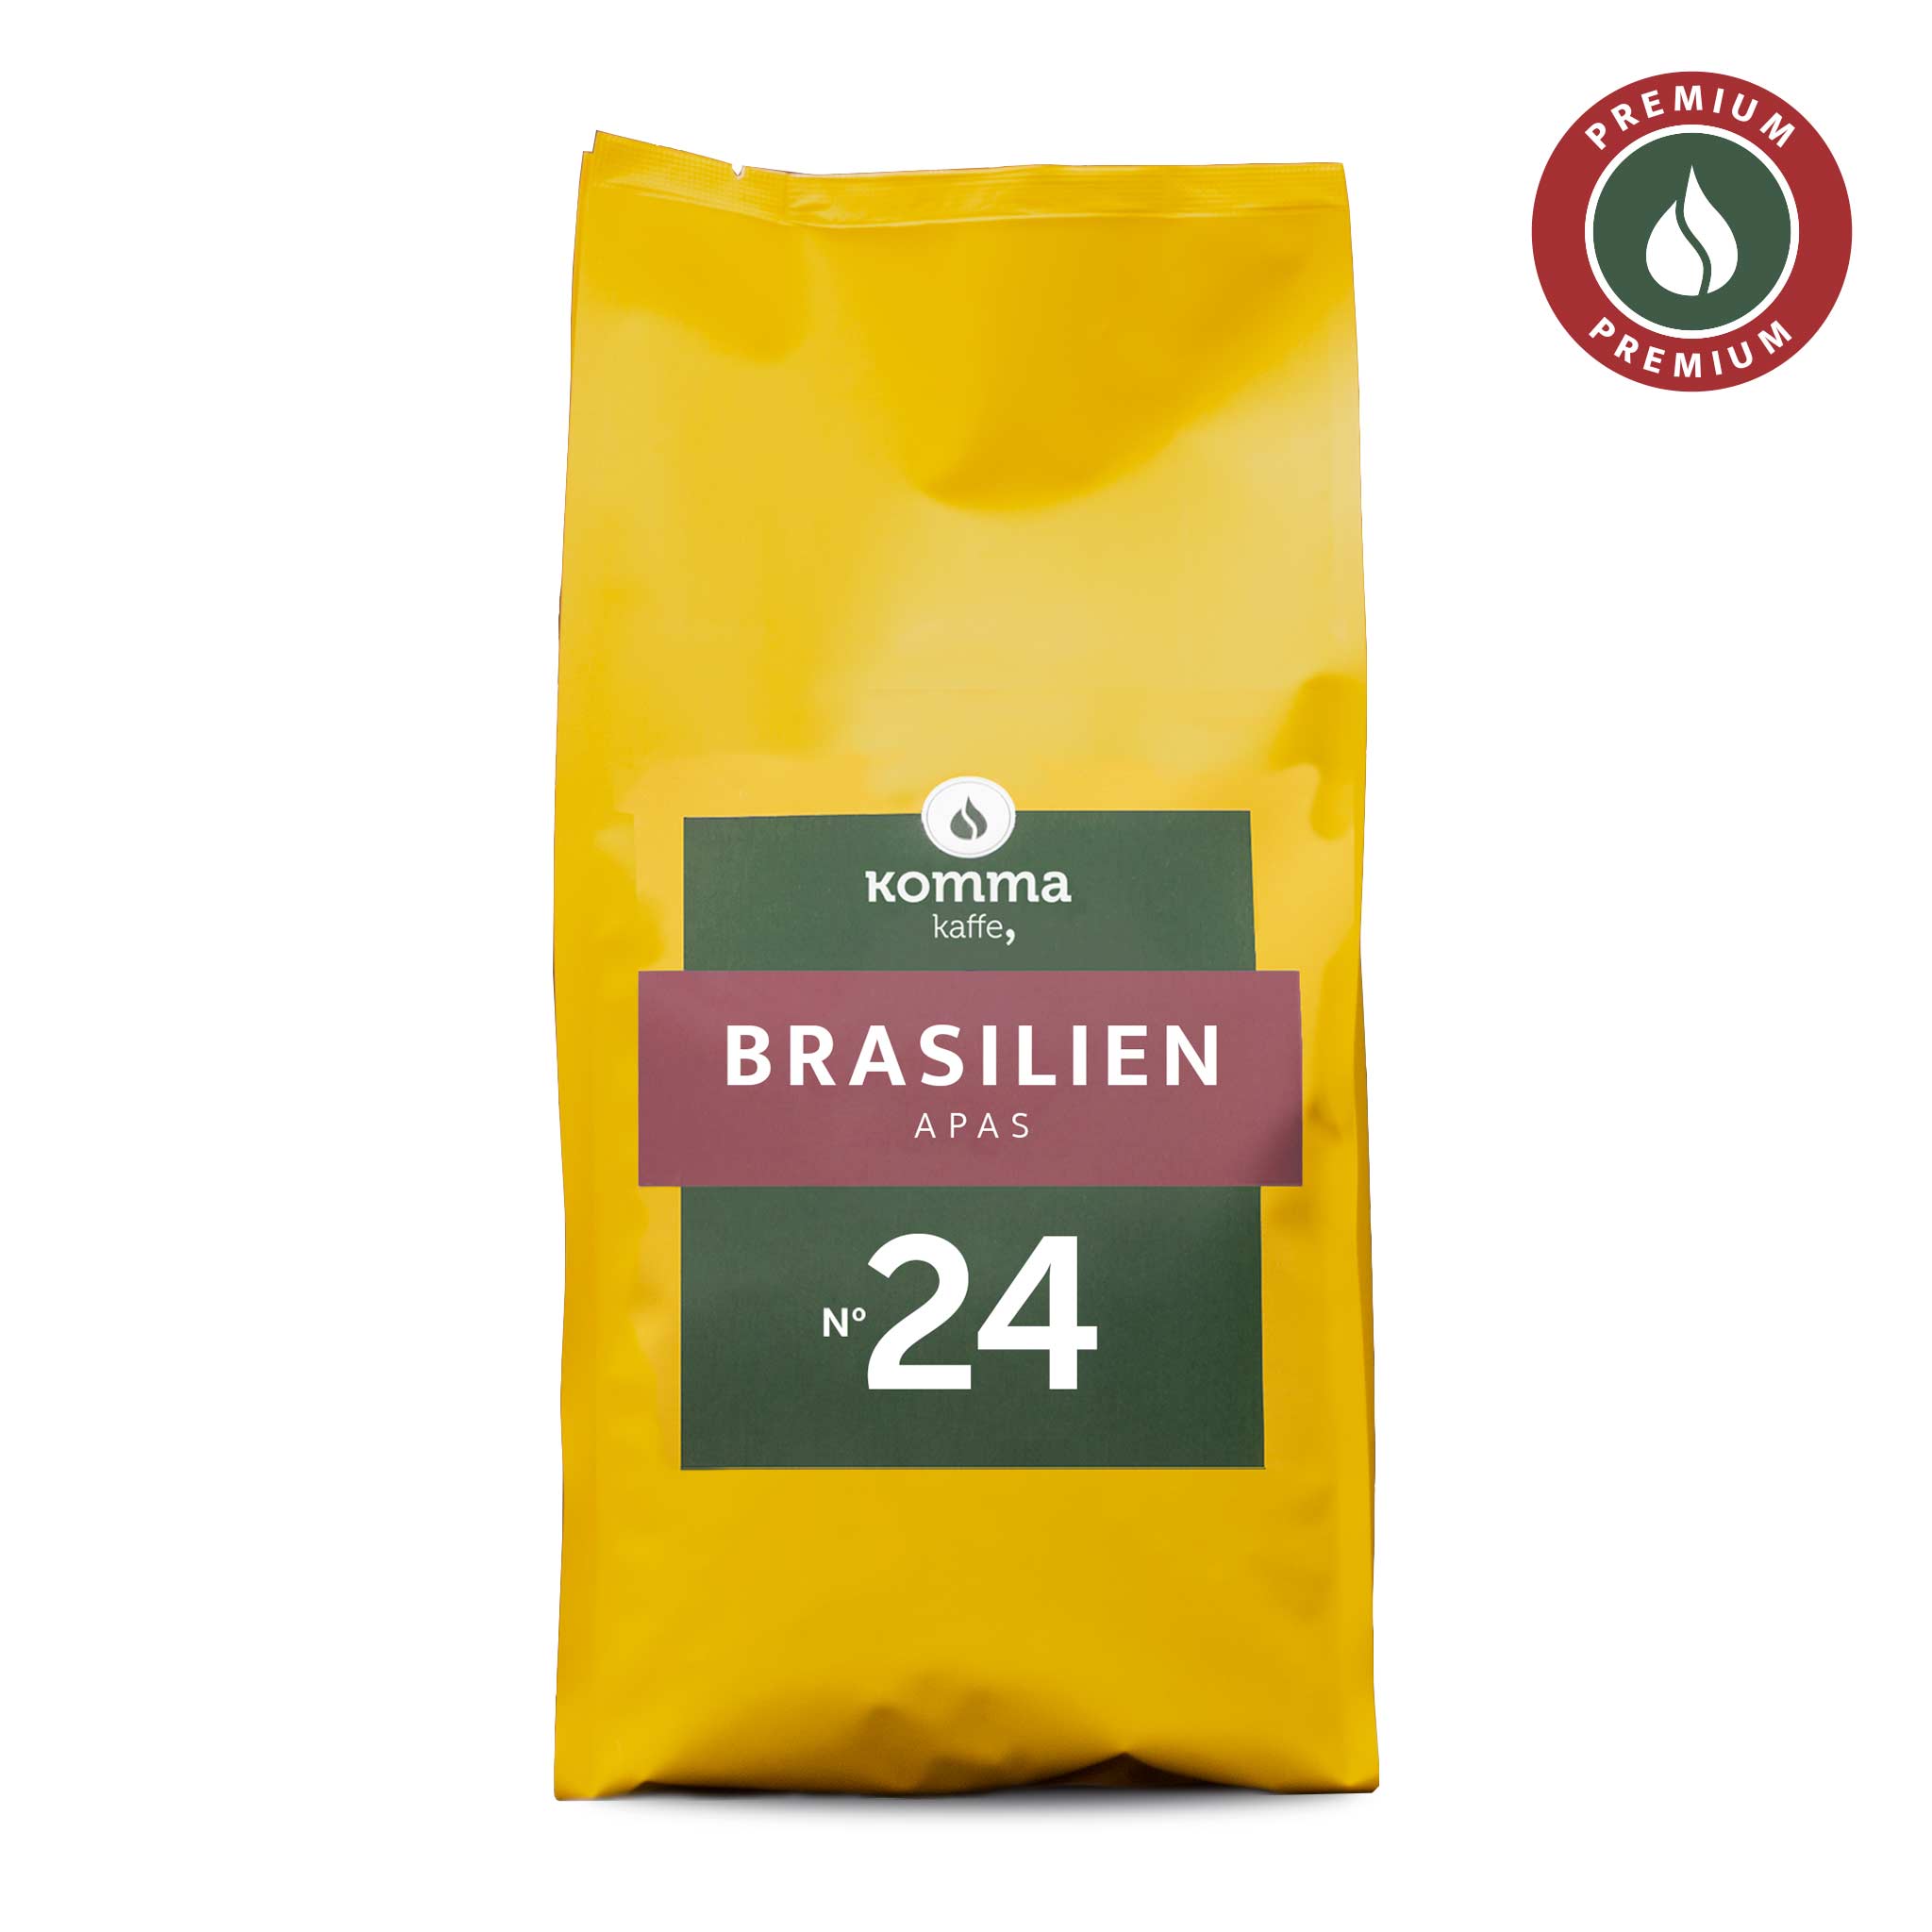 No. 24 | Brasilien